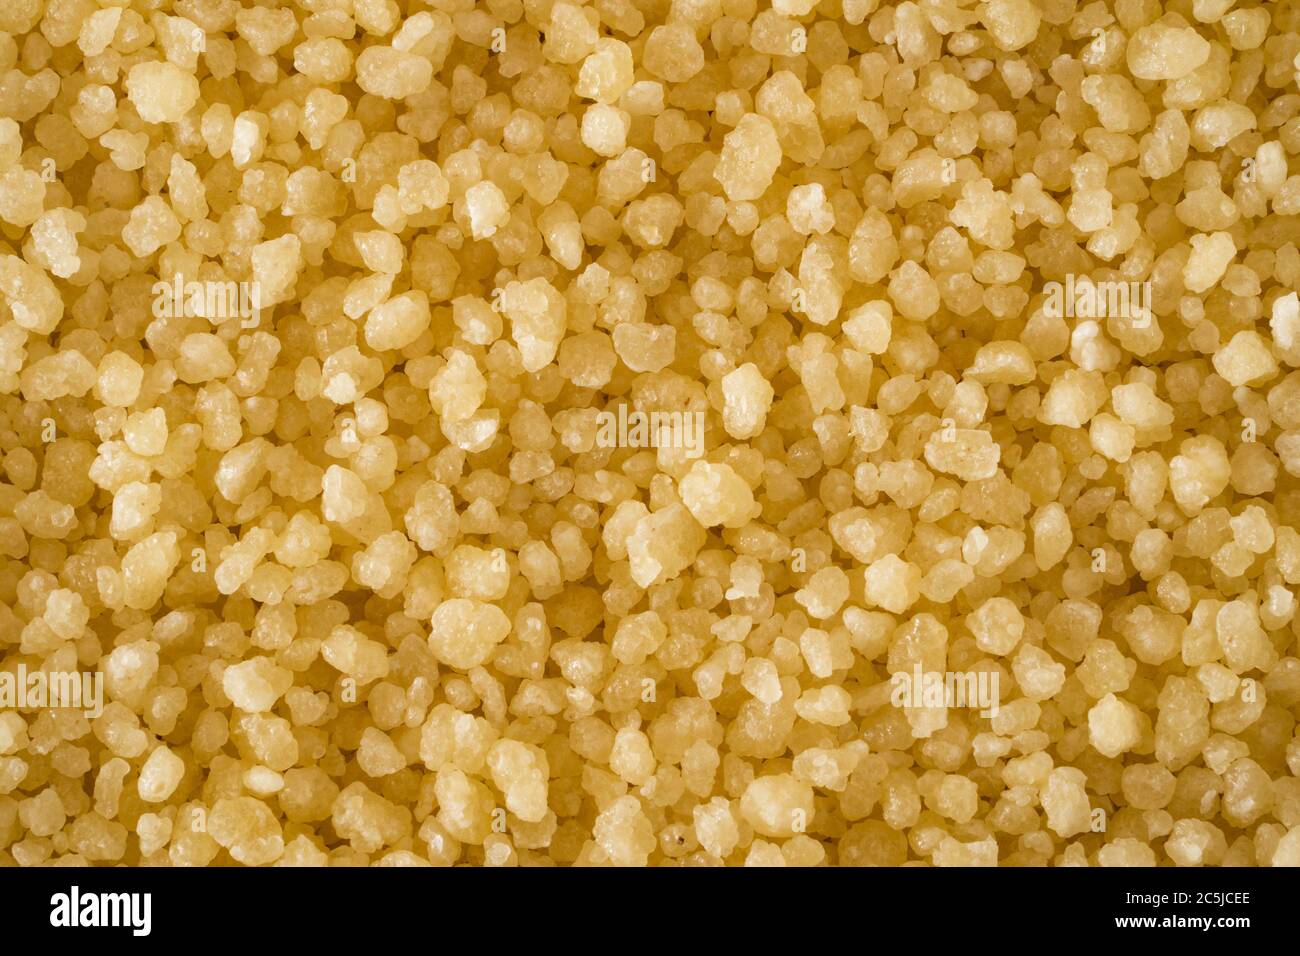 Un macro closeup di couscous crudo - minuscoli granuli di pasta fatti di grano duro / semola al vapore e essiccati utilizzati per cucinare un piatto nordafricano Foto Stock